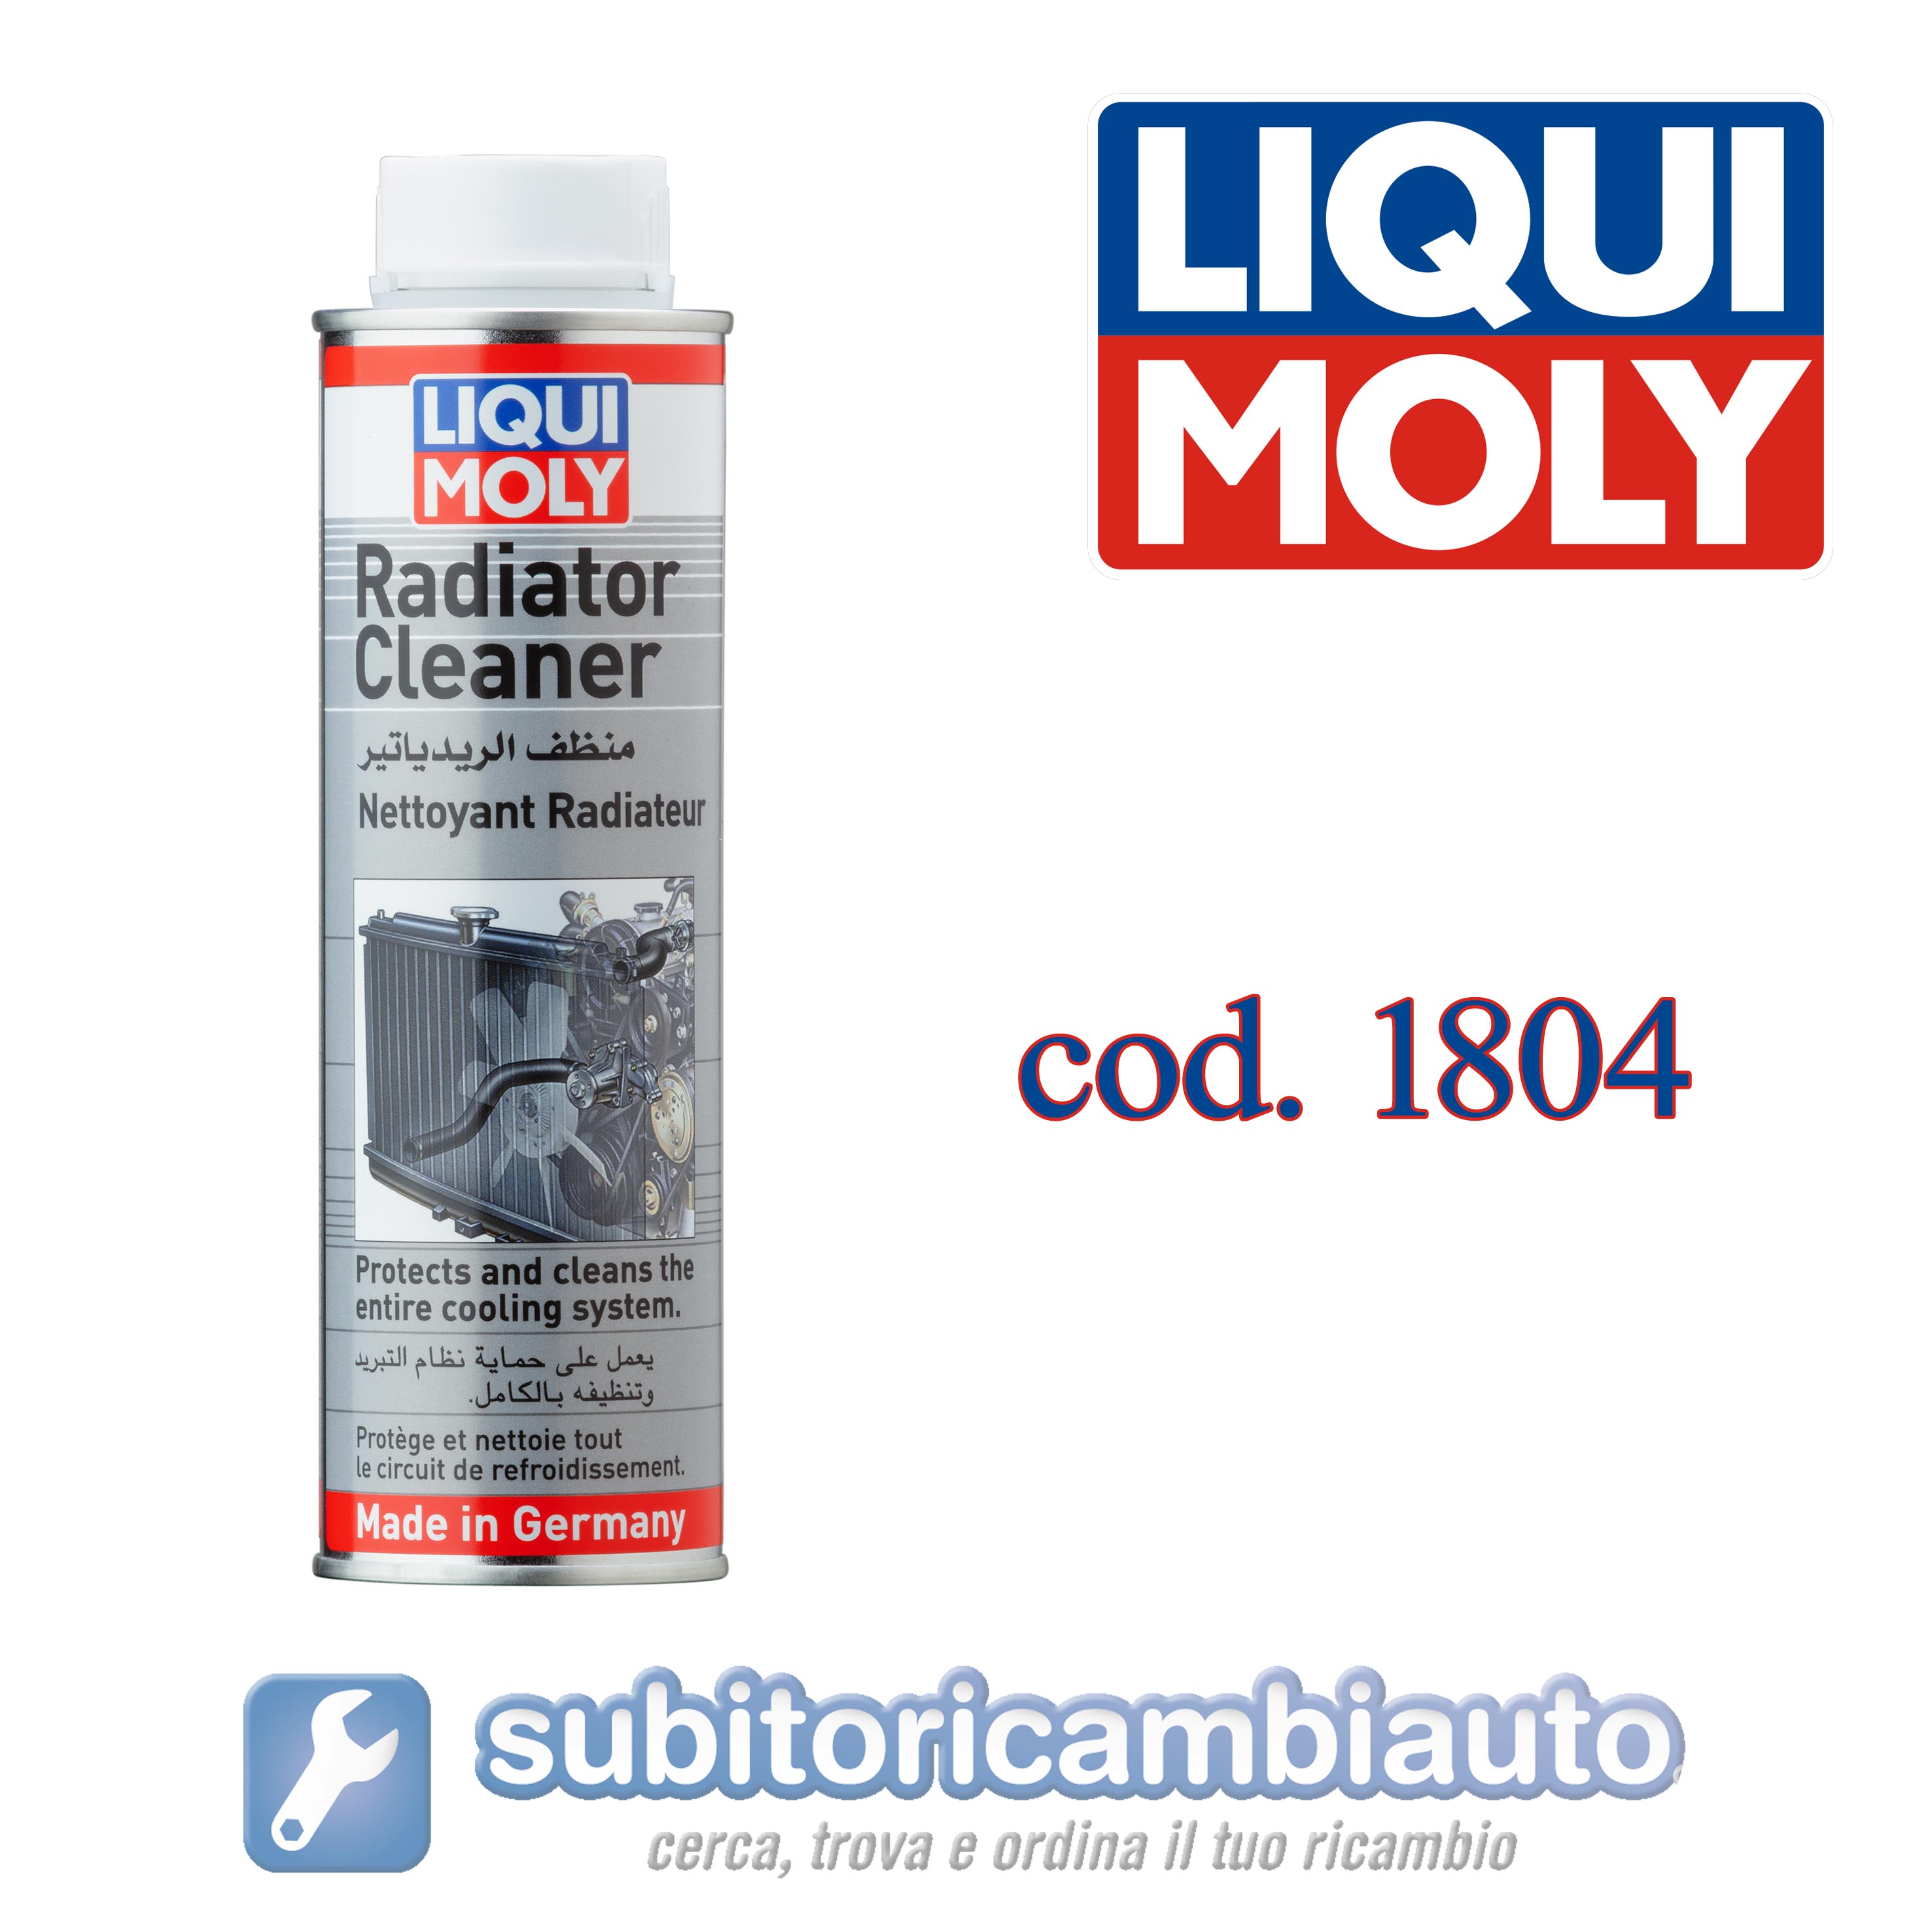 LIQUI MOLY 1804 Detergente per Radiatore - Radiator Cleaner - Pulizia radiatore